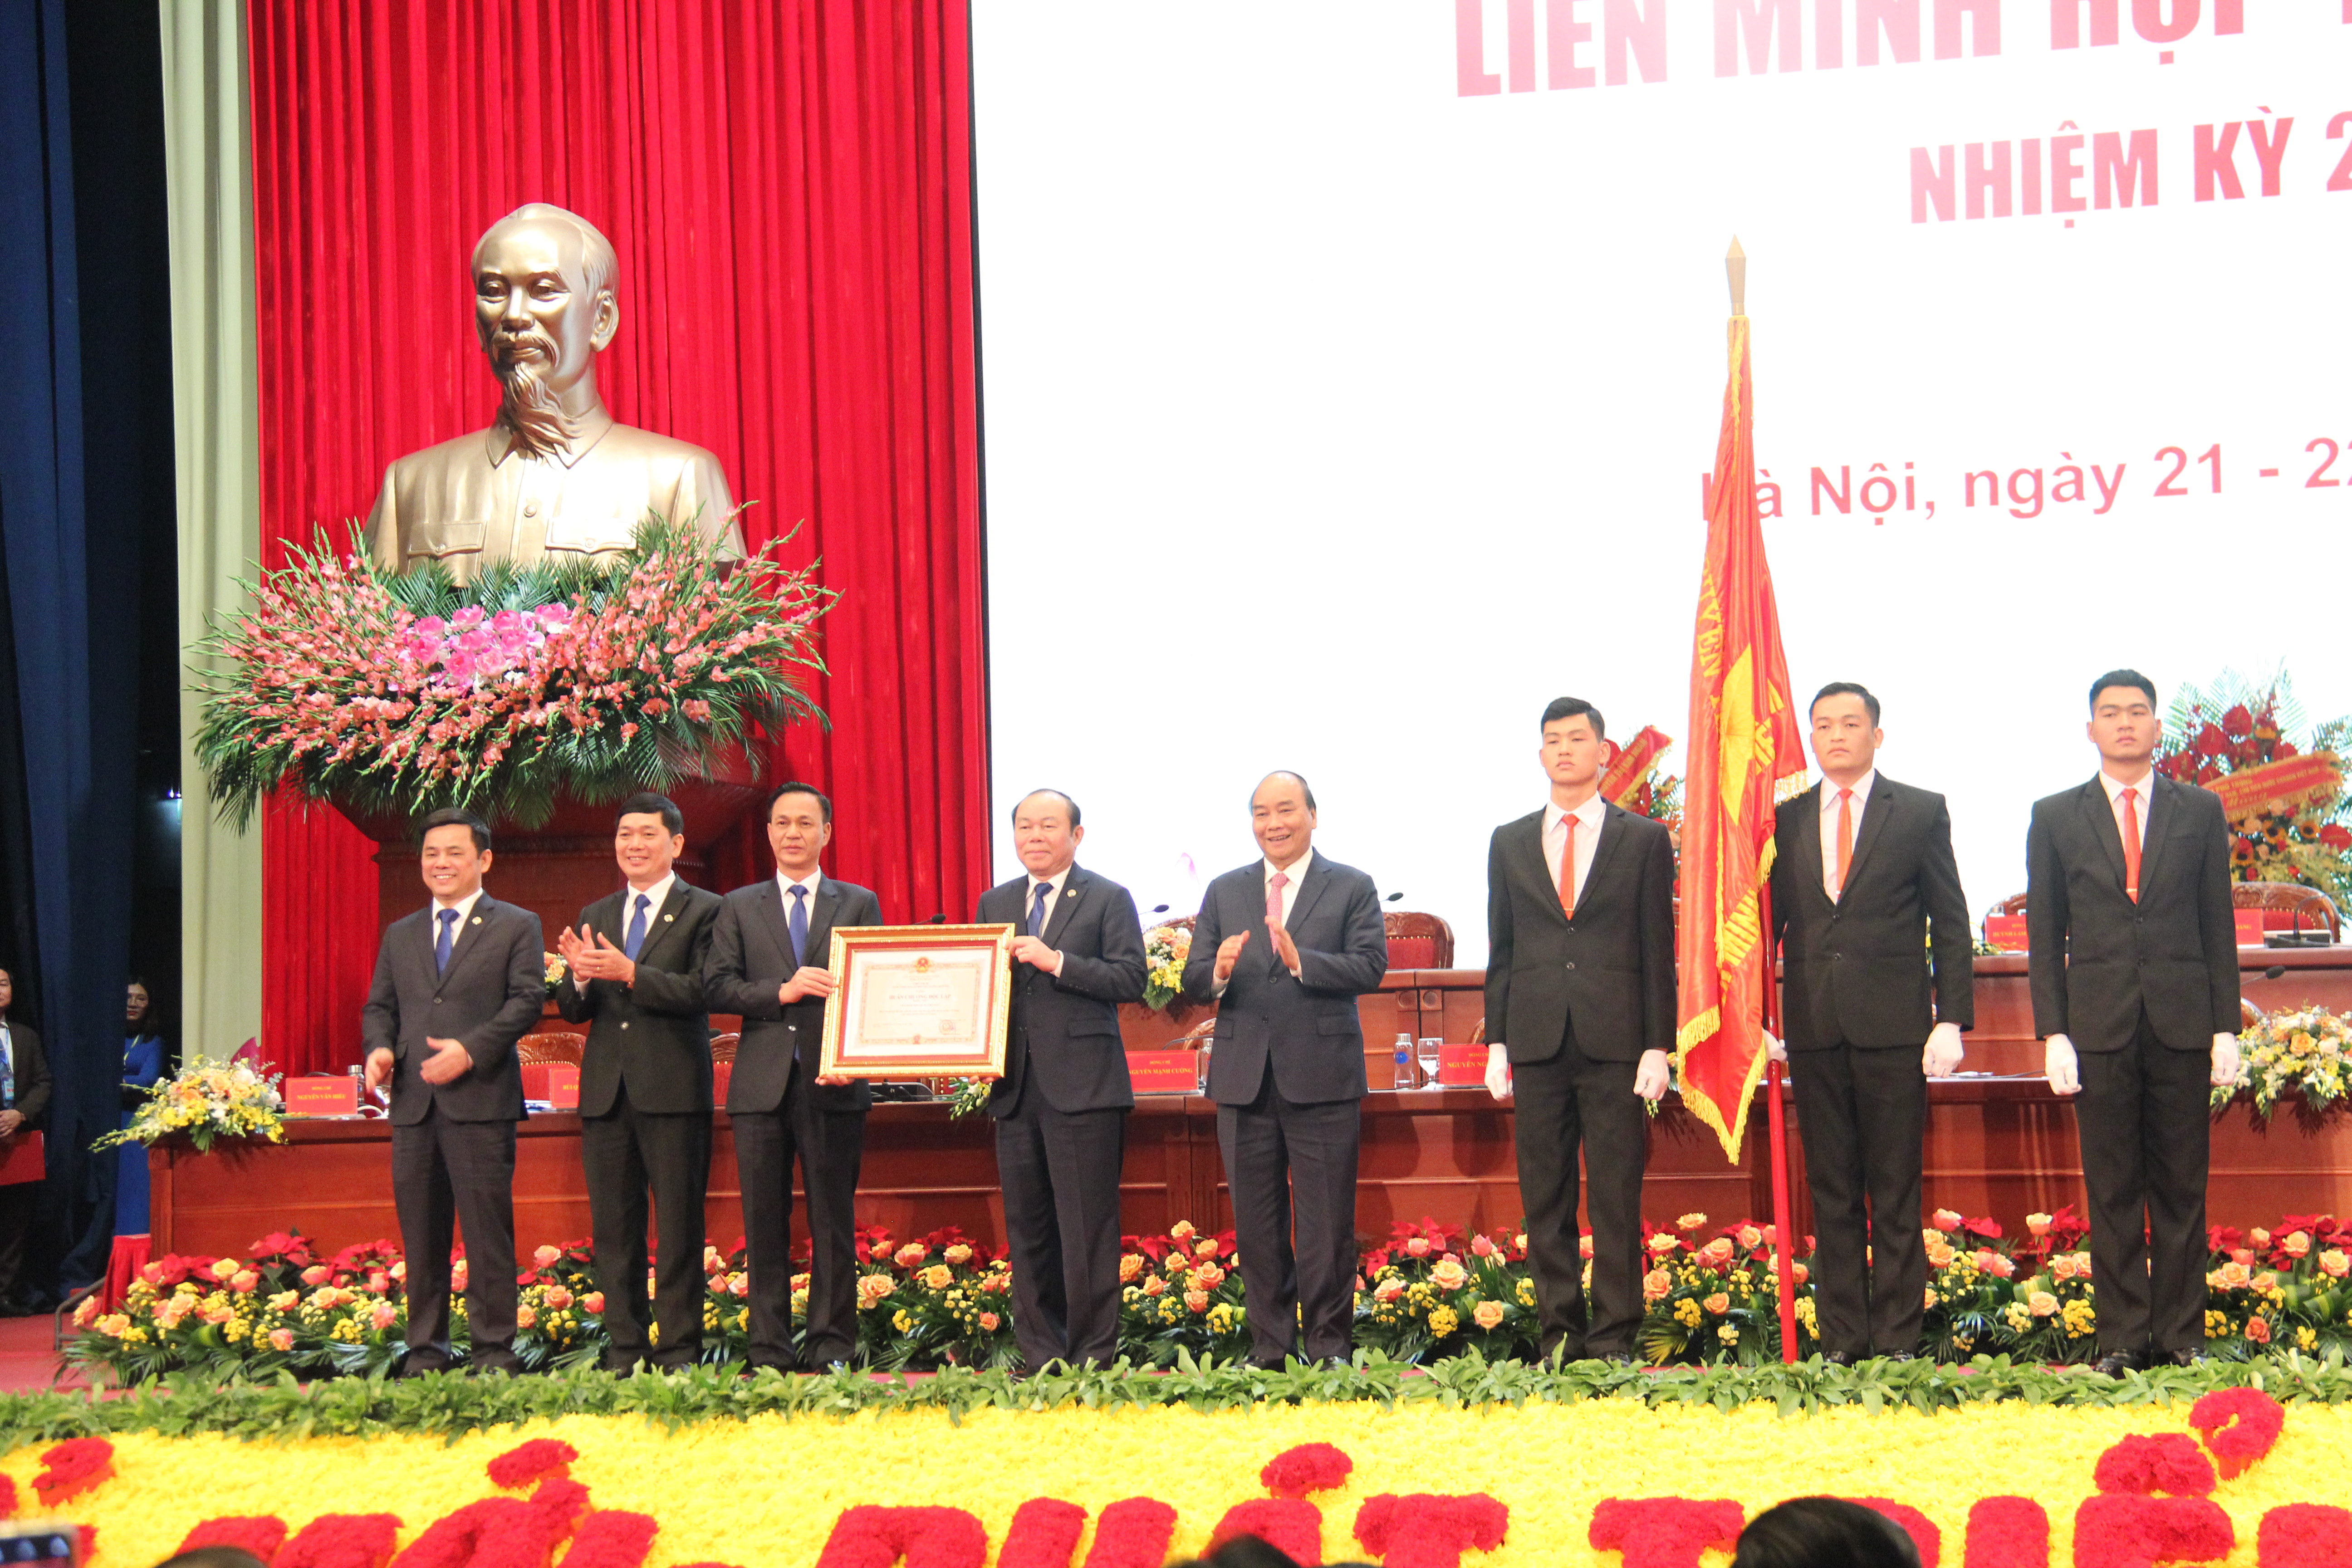 Huân chương Độc lập hạng Nhì là phần thưởng cao quý xứng đáng với những thành quả Liên minh hợp tác xã Việt Nam đã đạt được trong những năm qua